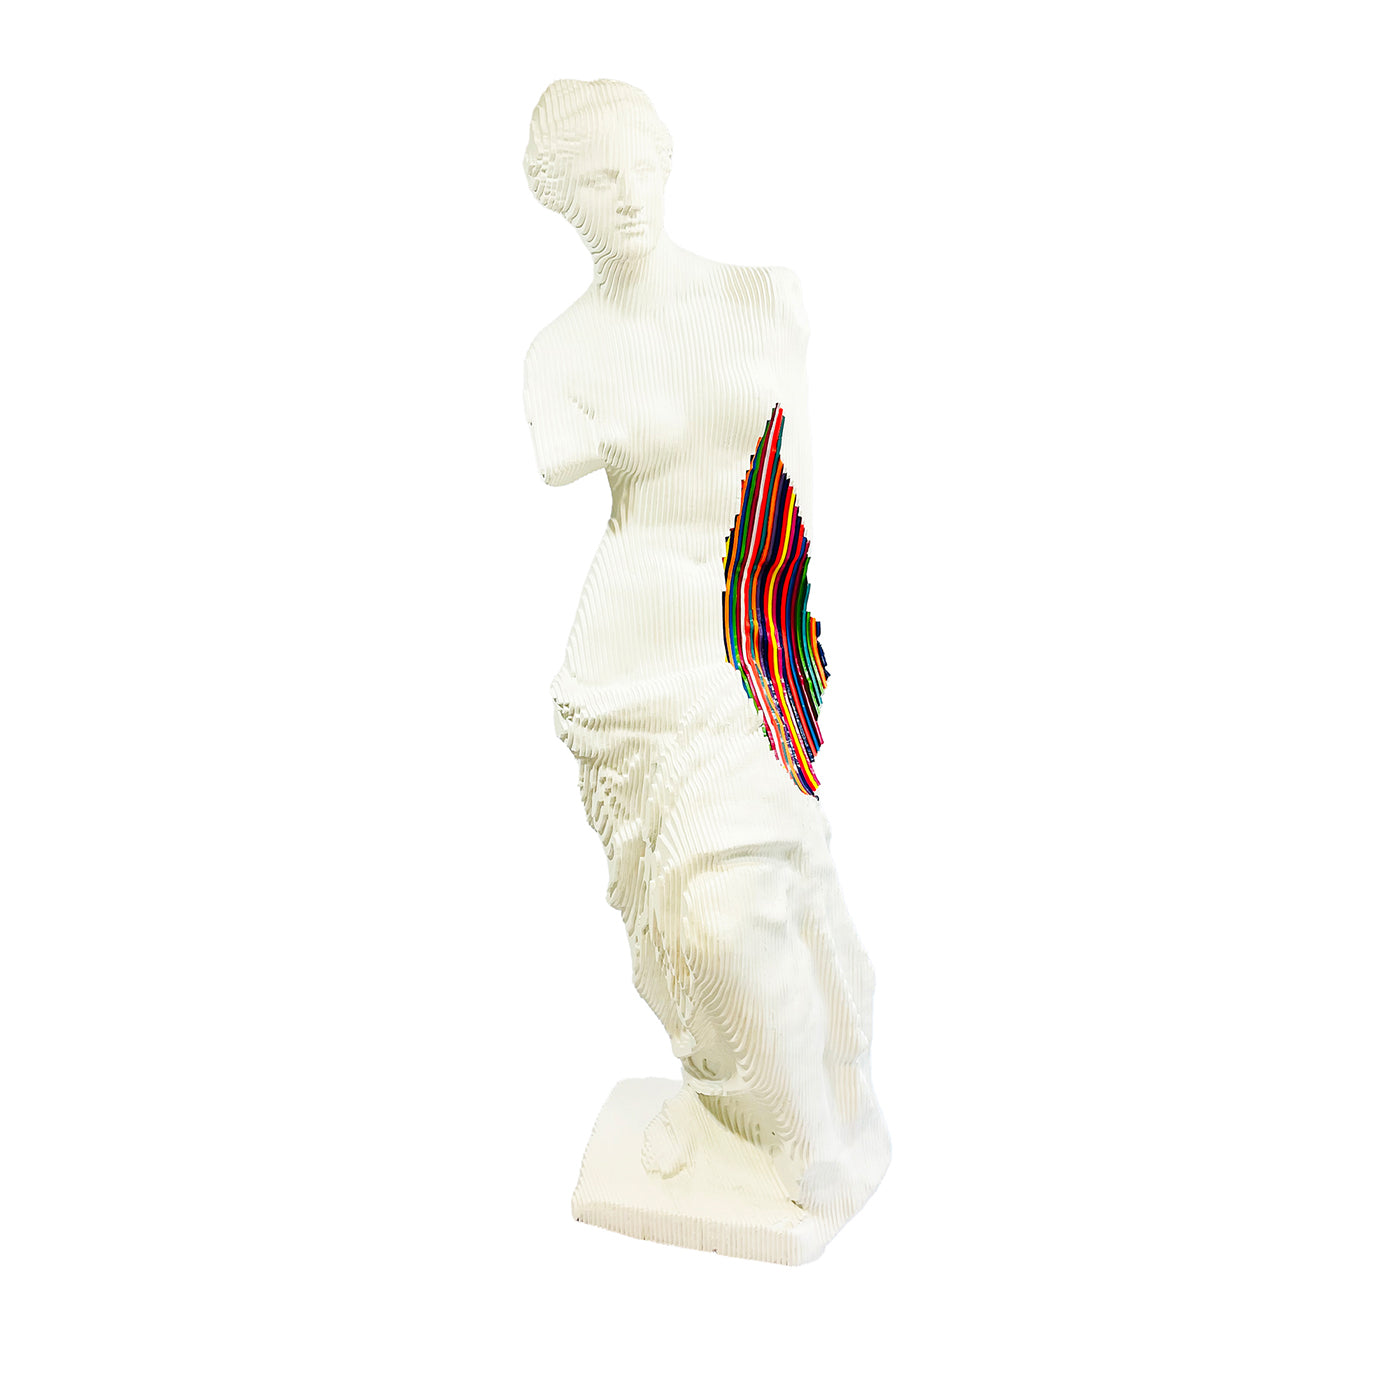 Venus Milo Einfärbung Skulptur - Hauptansicht